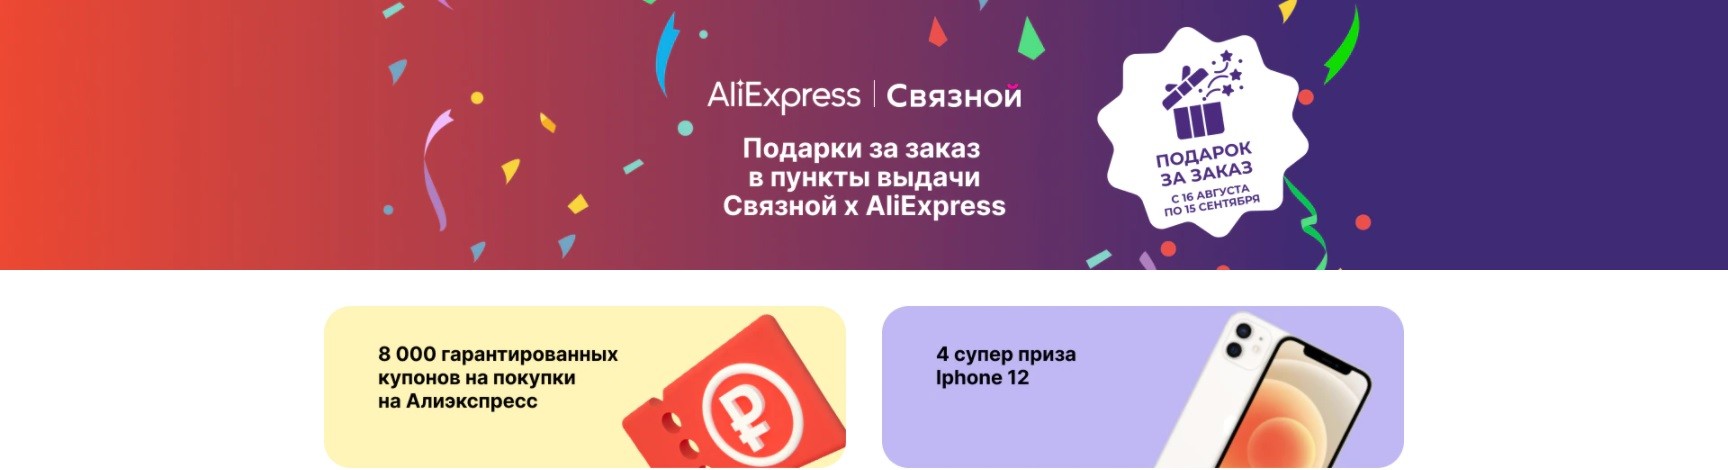 Акция от AliExpress и Связной - Купон 150₽ от 300₽